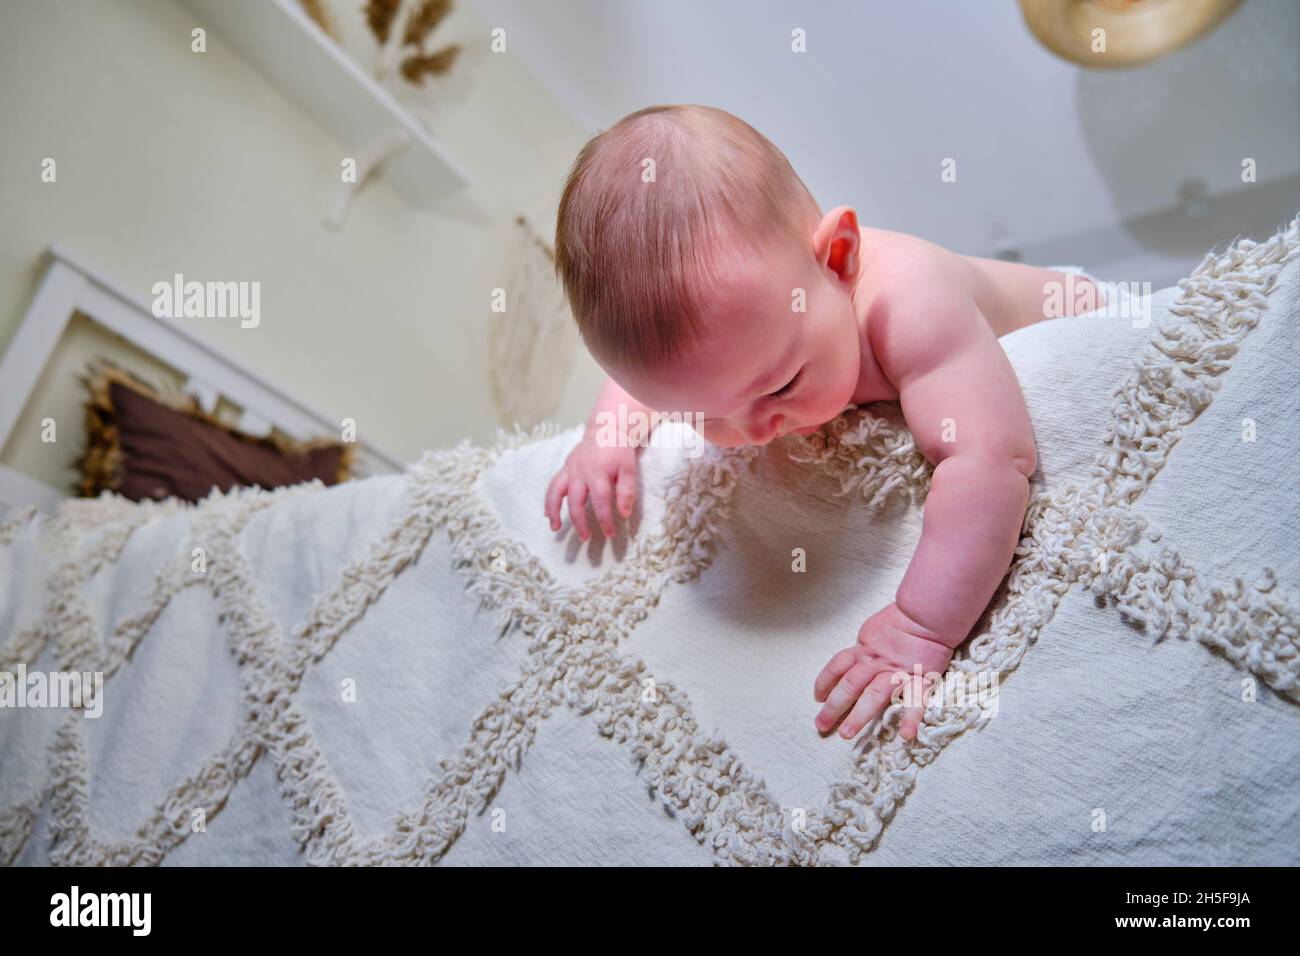 Bébé tombe du lit sans surveillance parentale et peut se blesser, concept  Photo Stock - Alamy